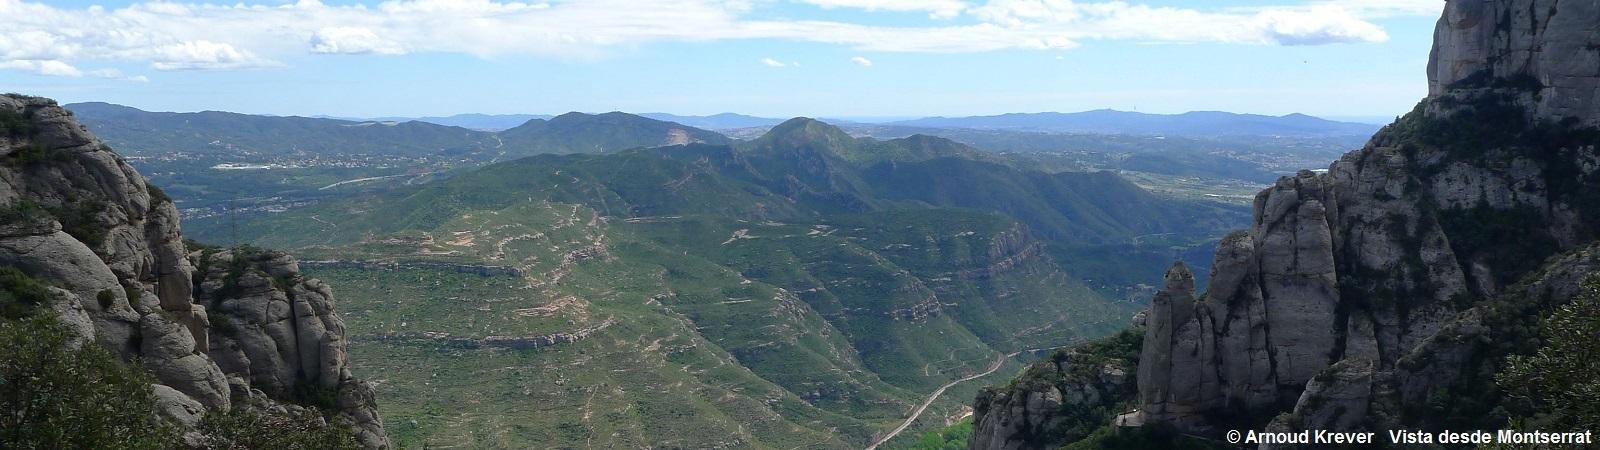 16BarS (271) Uitzicht vanaf klooster Montserrat